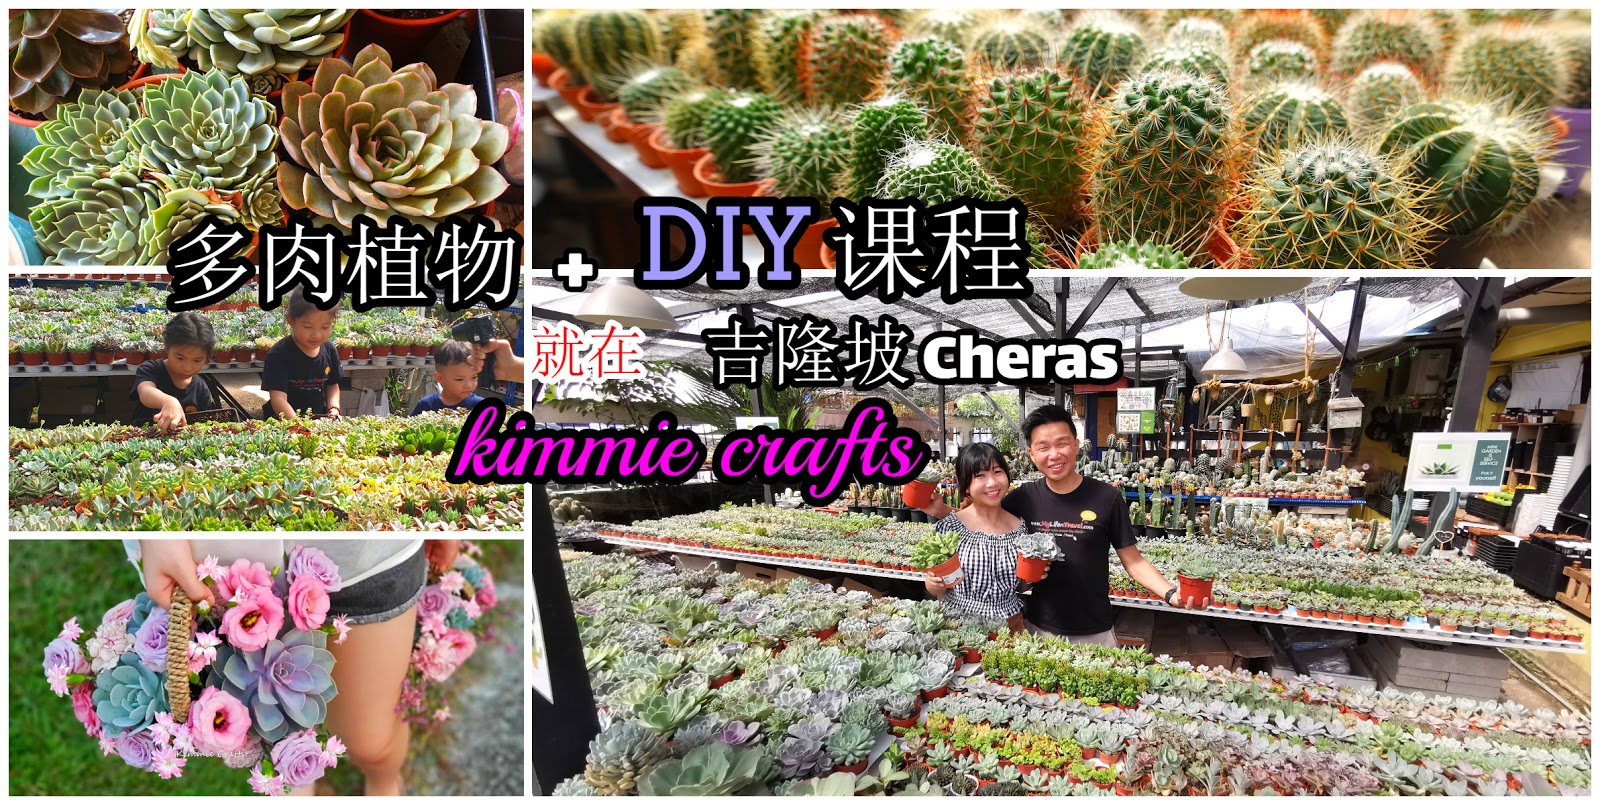 Kimmie Crafts 仙人掌和多肉植物 Diy 活动 旅游博客王宏量